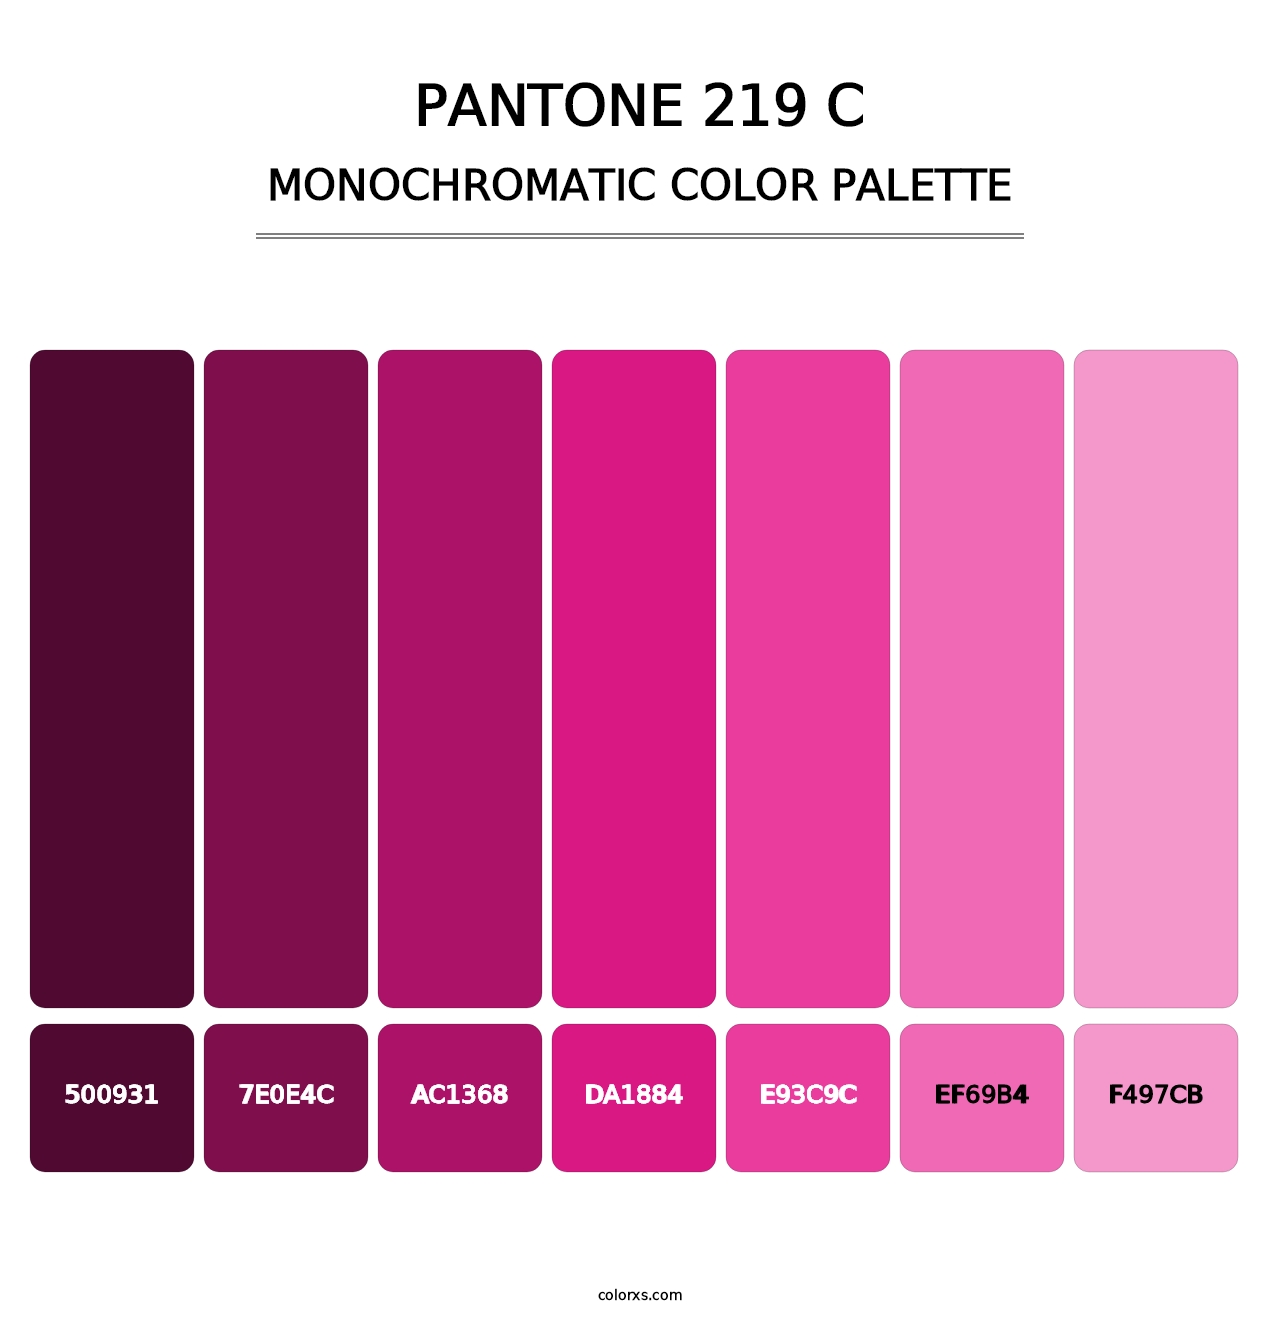 PANTONE 219 C - Monochromatic Color Palette